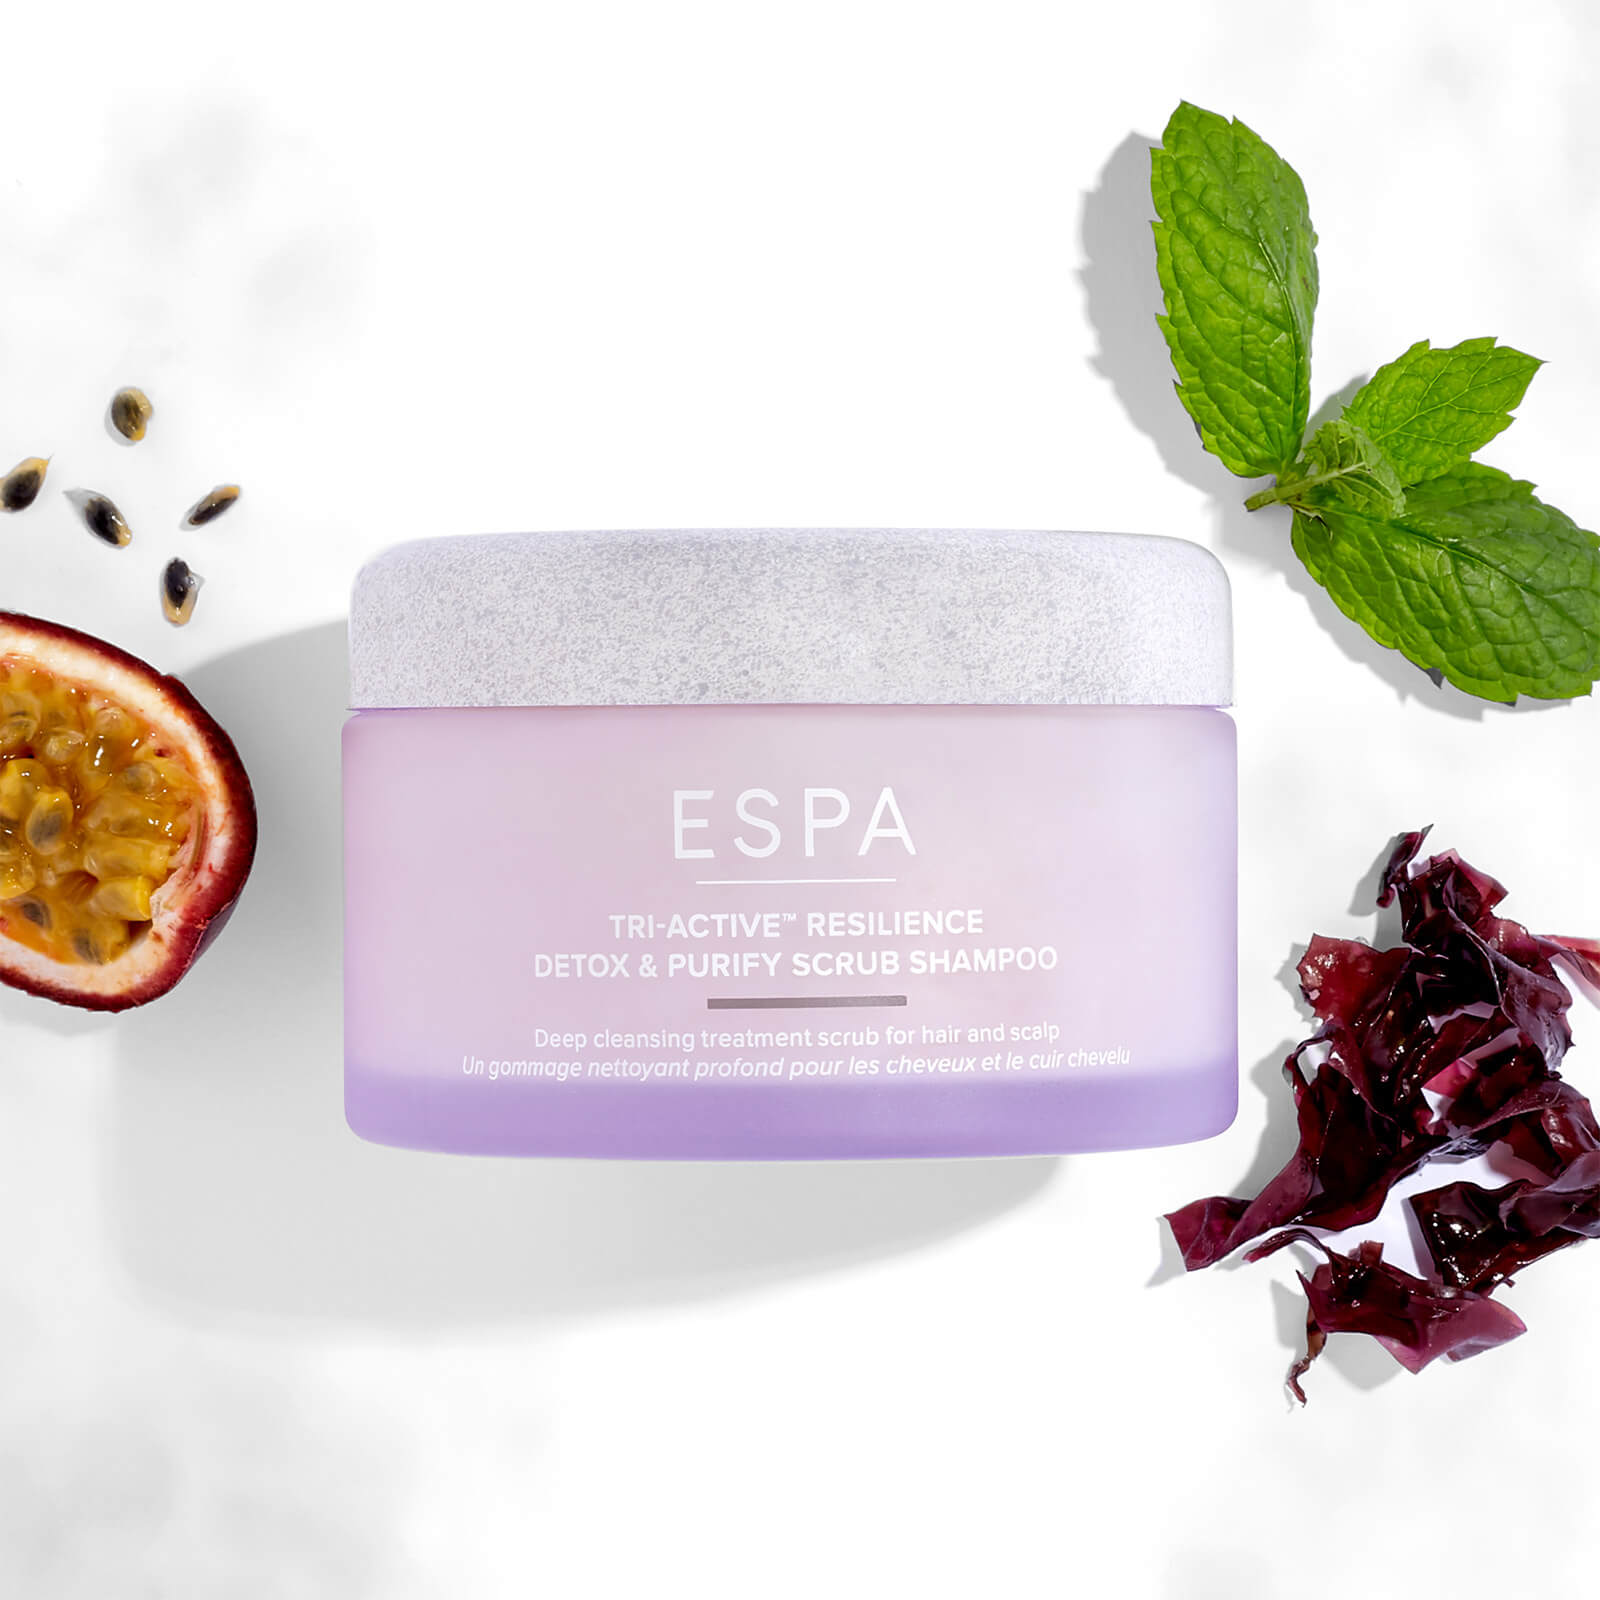 Shop Espa Tri-activetm Resilience Detox & Purify Scrub Shampoo